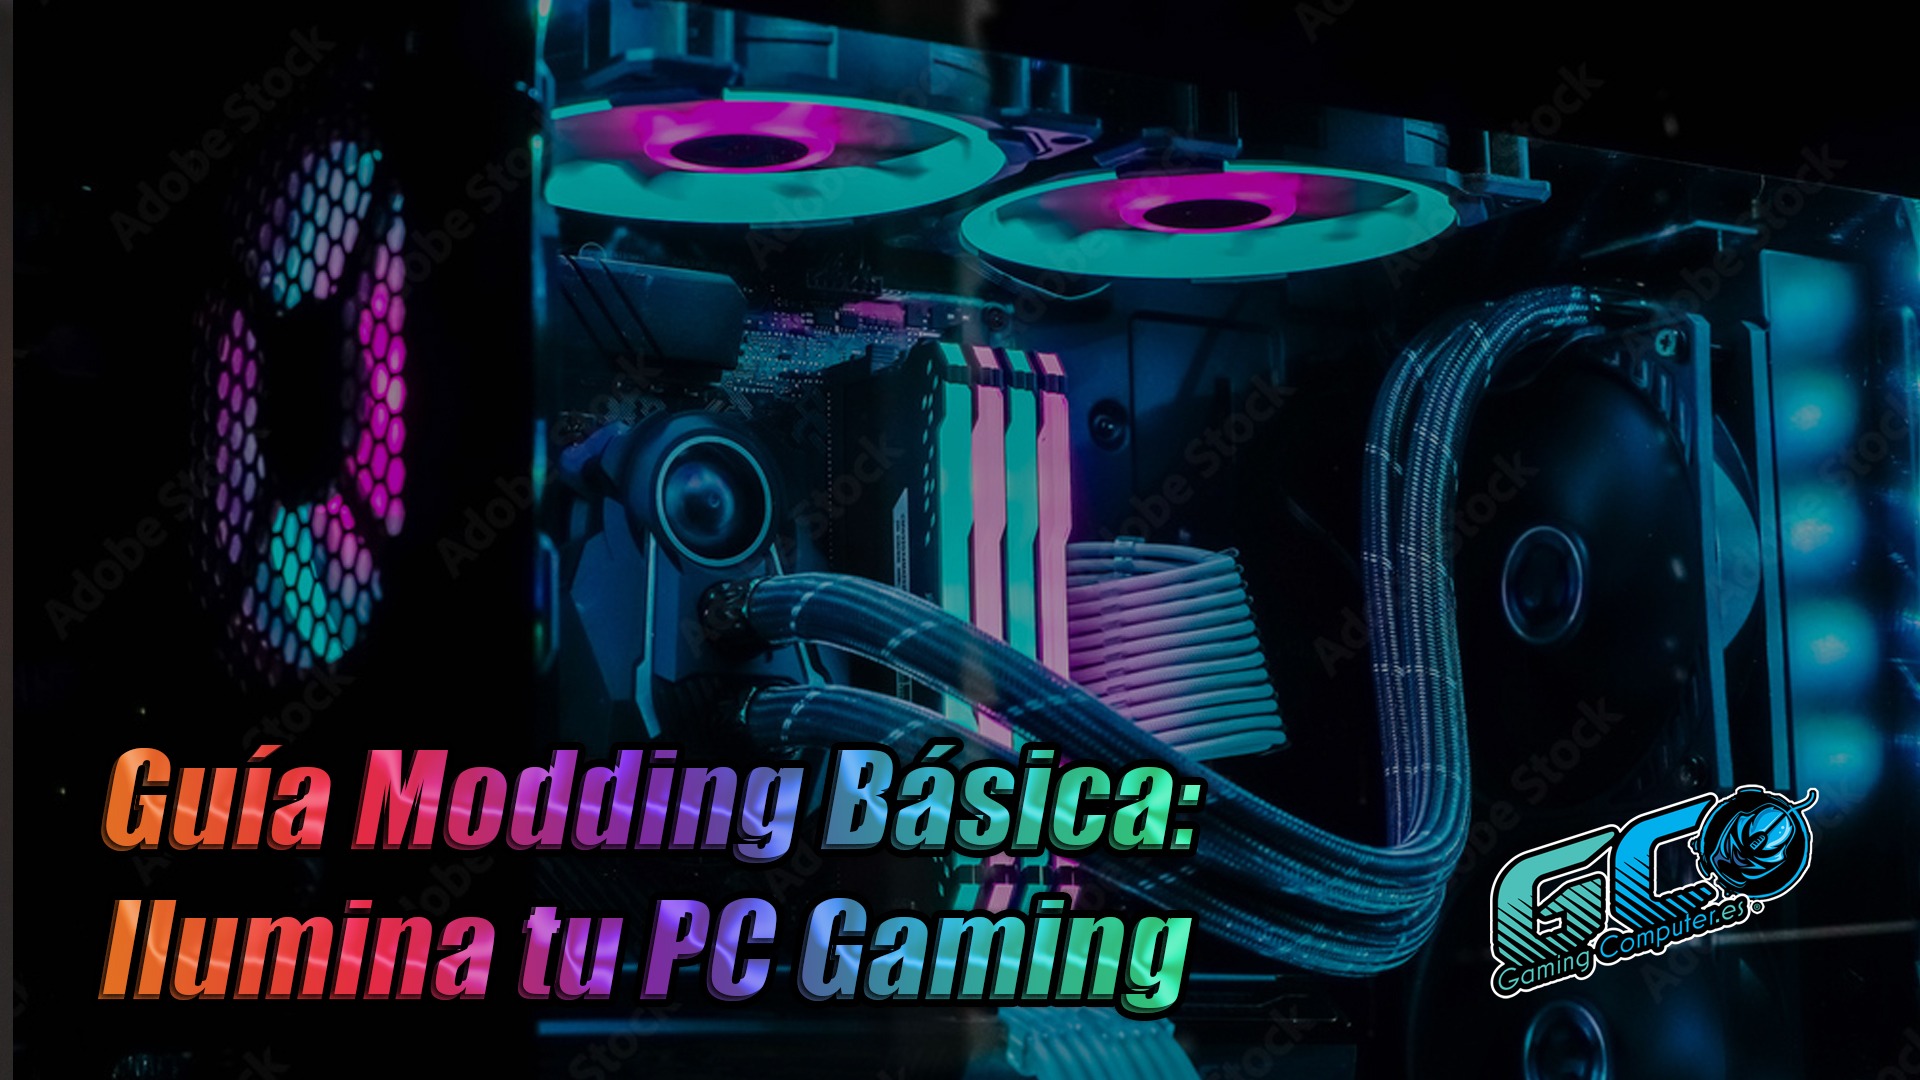 Guía Modding Básica: Ilumina tu PC Gaming